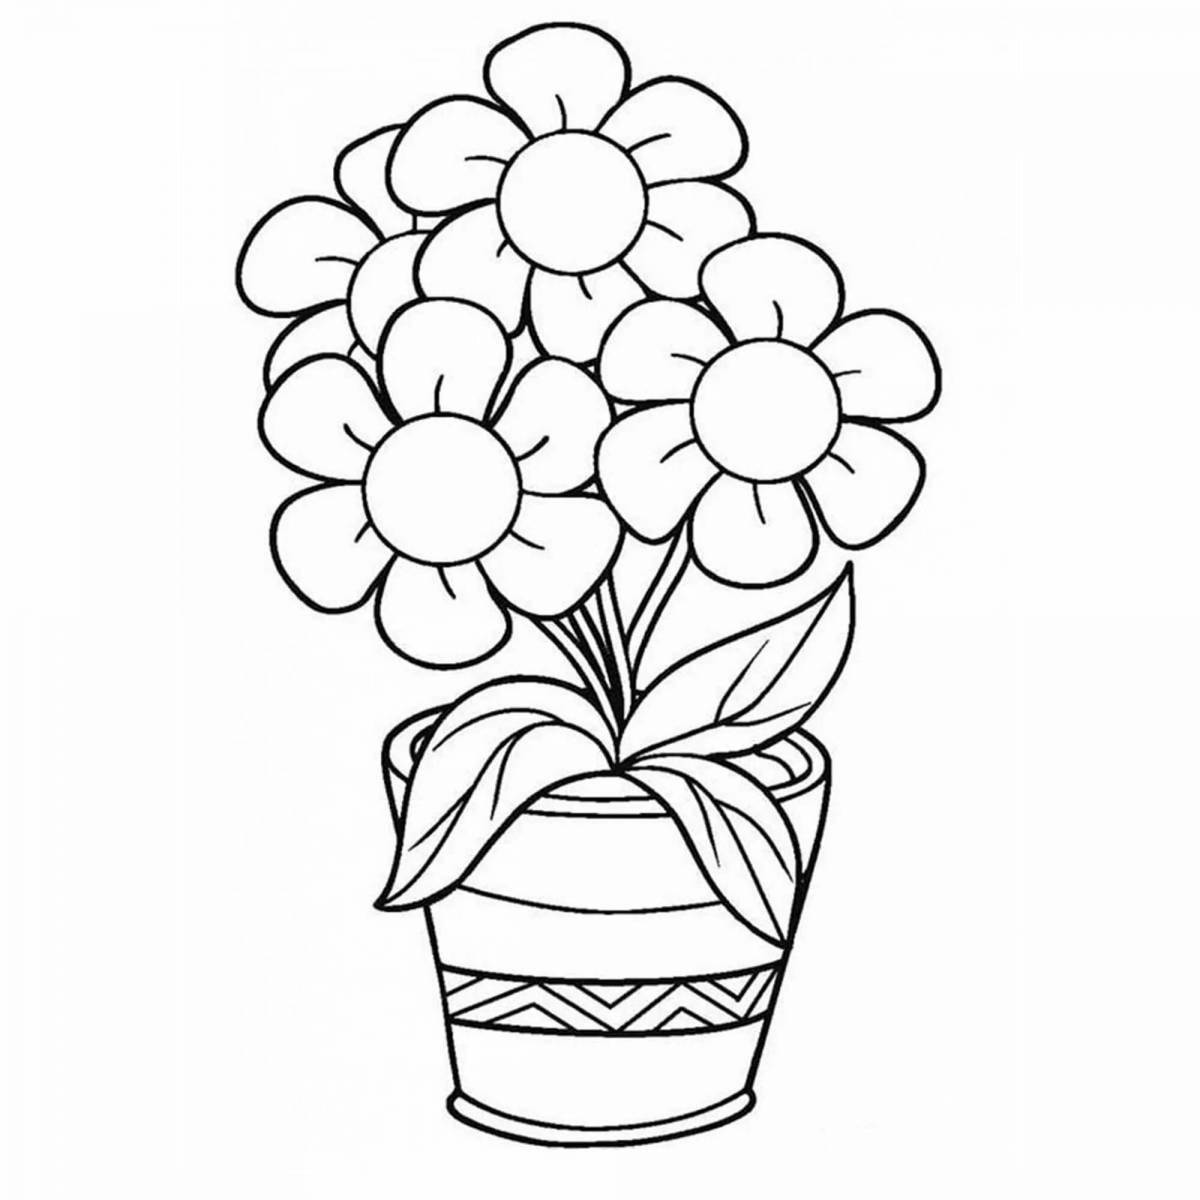 Раскраски онлайн Букеты цветов бесплатно